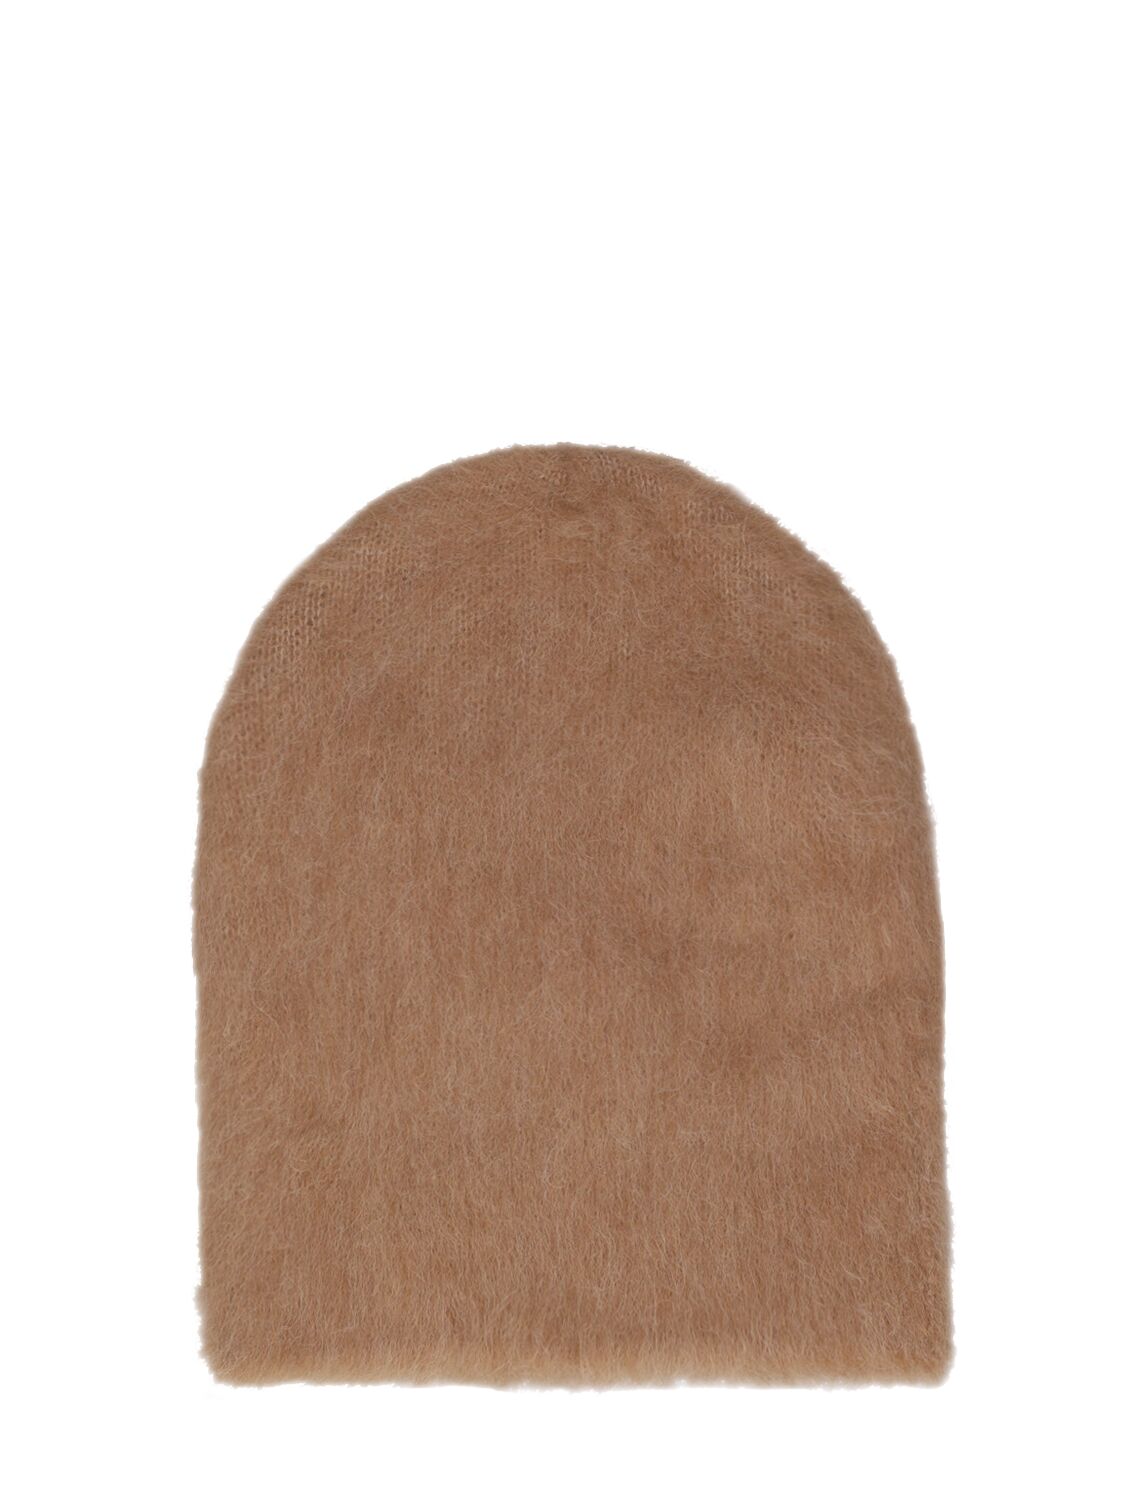 Solid Brushed Alpaca Blend Hat